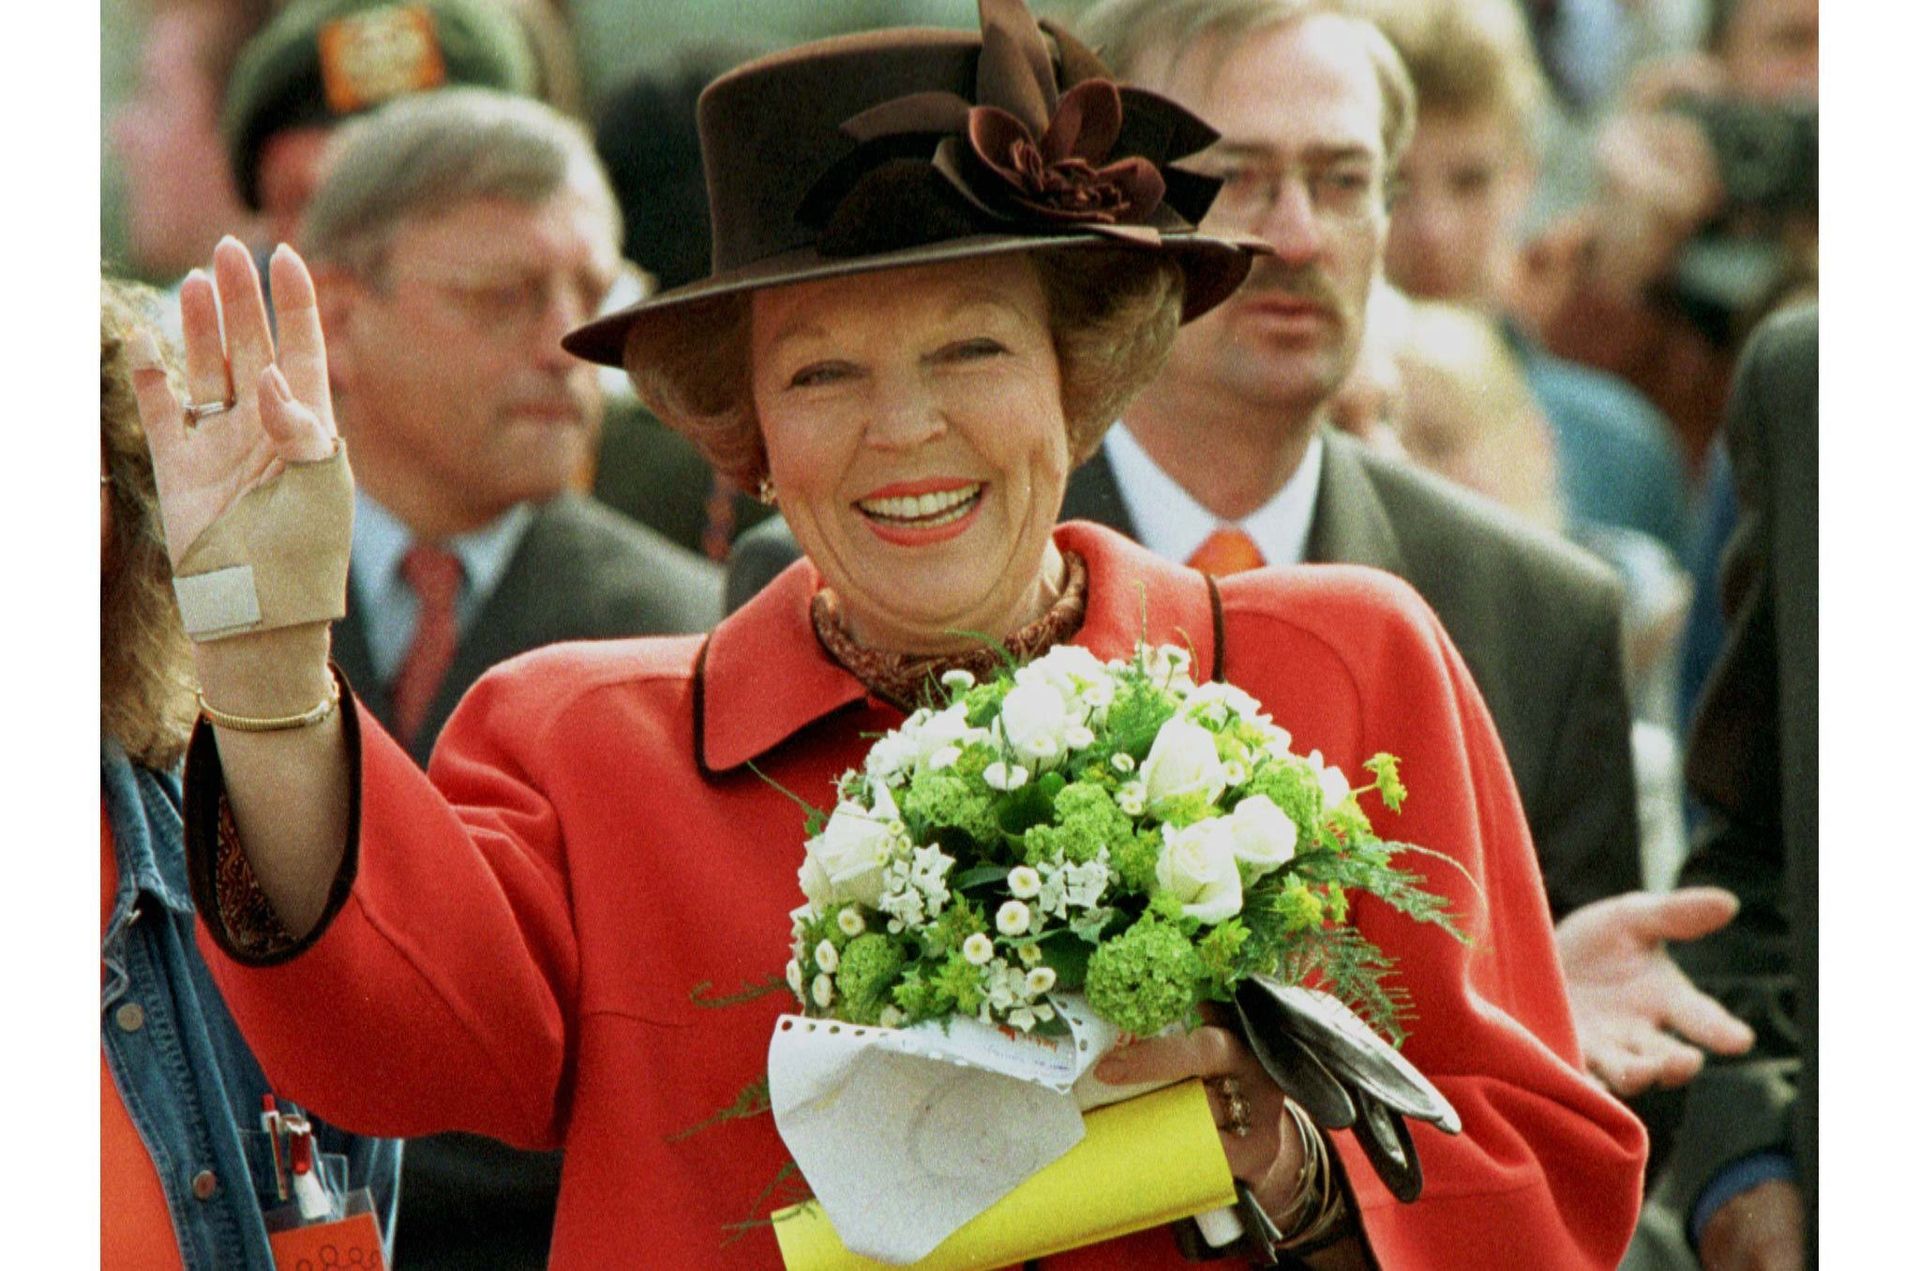 Koninginnedag 1996 in Sint-Maartensdijk en Bergen op Zoom. Blijkbaar had de koningin haar hand hier